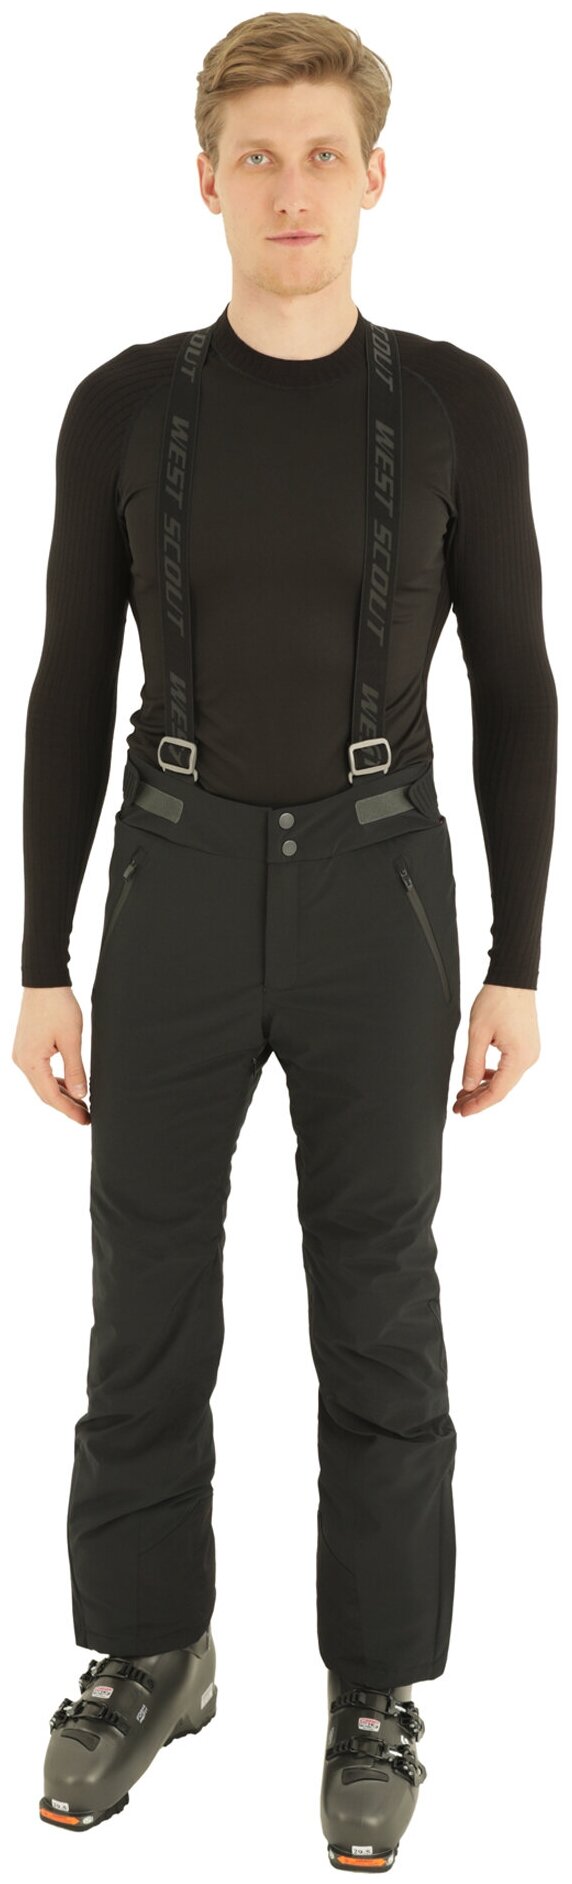 брюки West scout Mars M, карманы, мембрана, регулировка объема талии, утепленные, водонепроницаемые